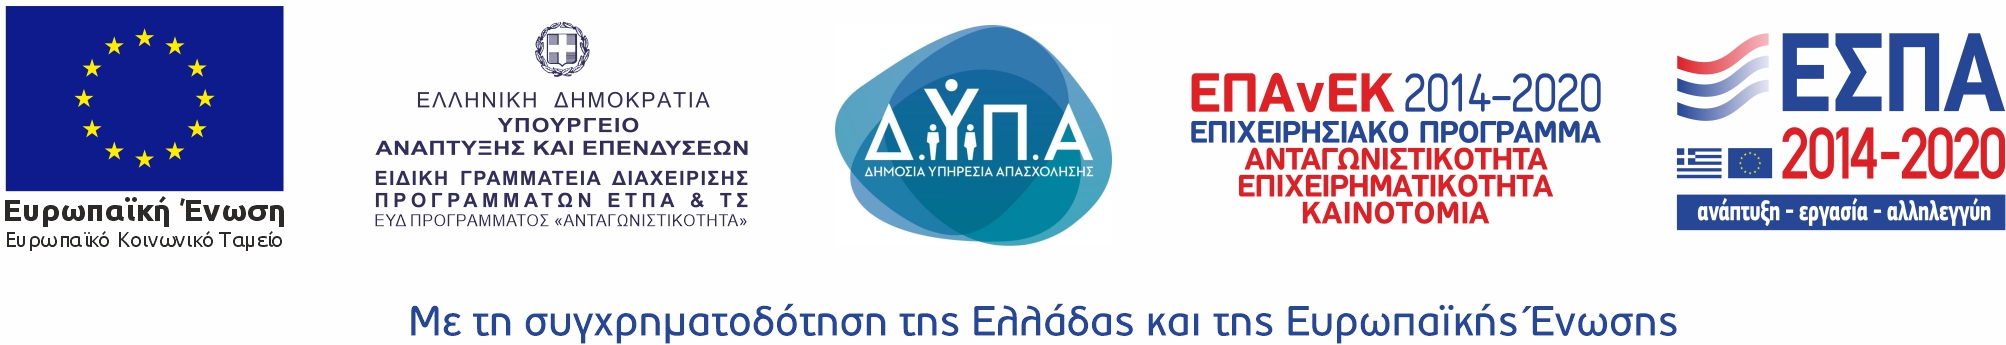 ΕΣΠΑ banner